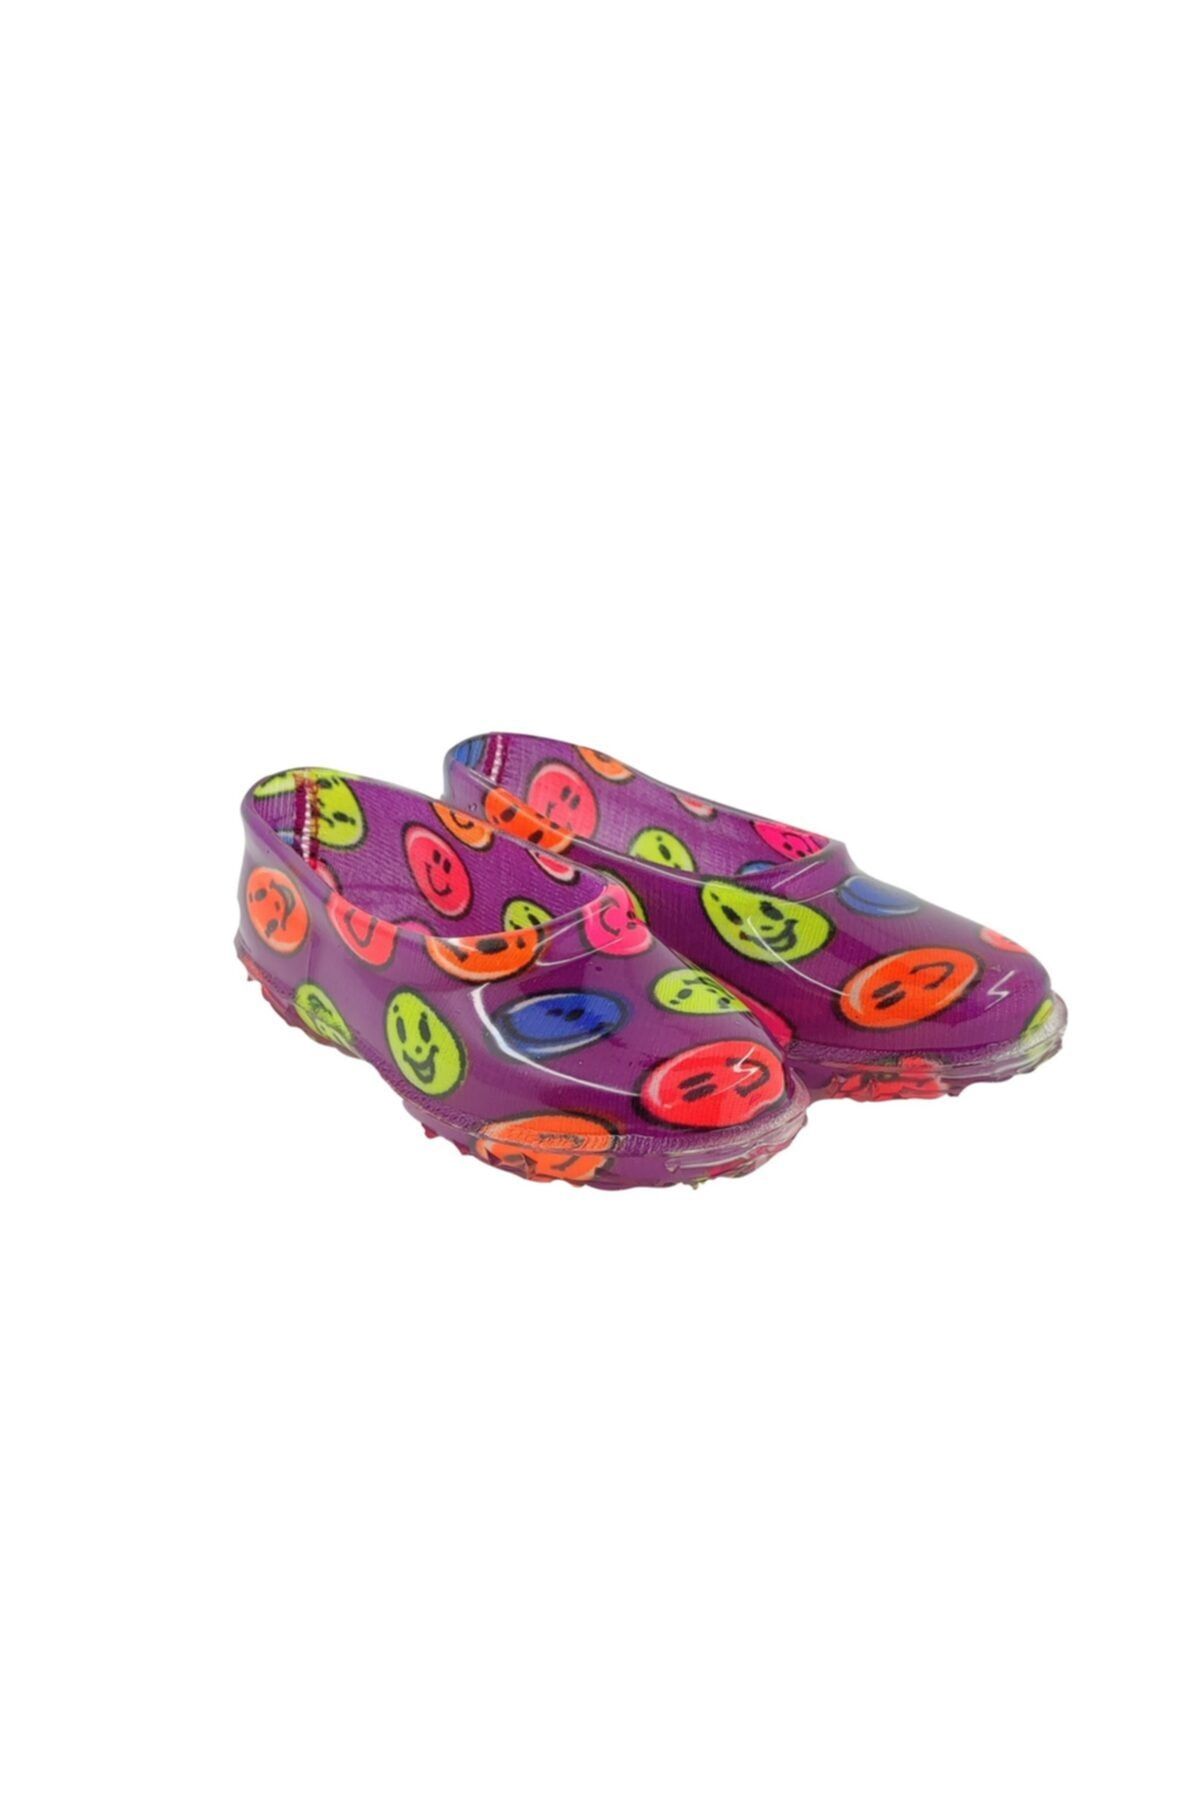 fafatara Mor Renkli Emoji Desenli Çoçuk Lastik Ayakkabı